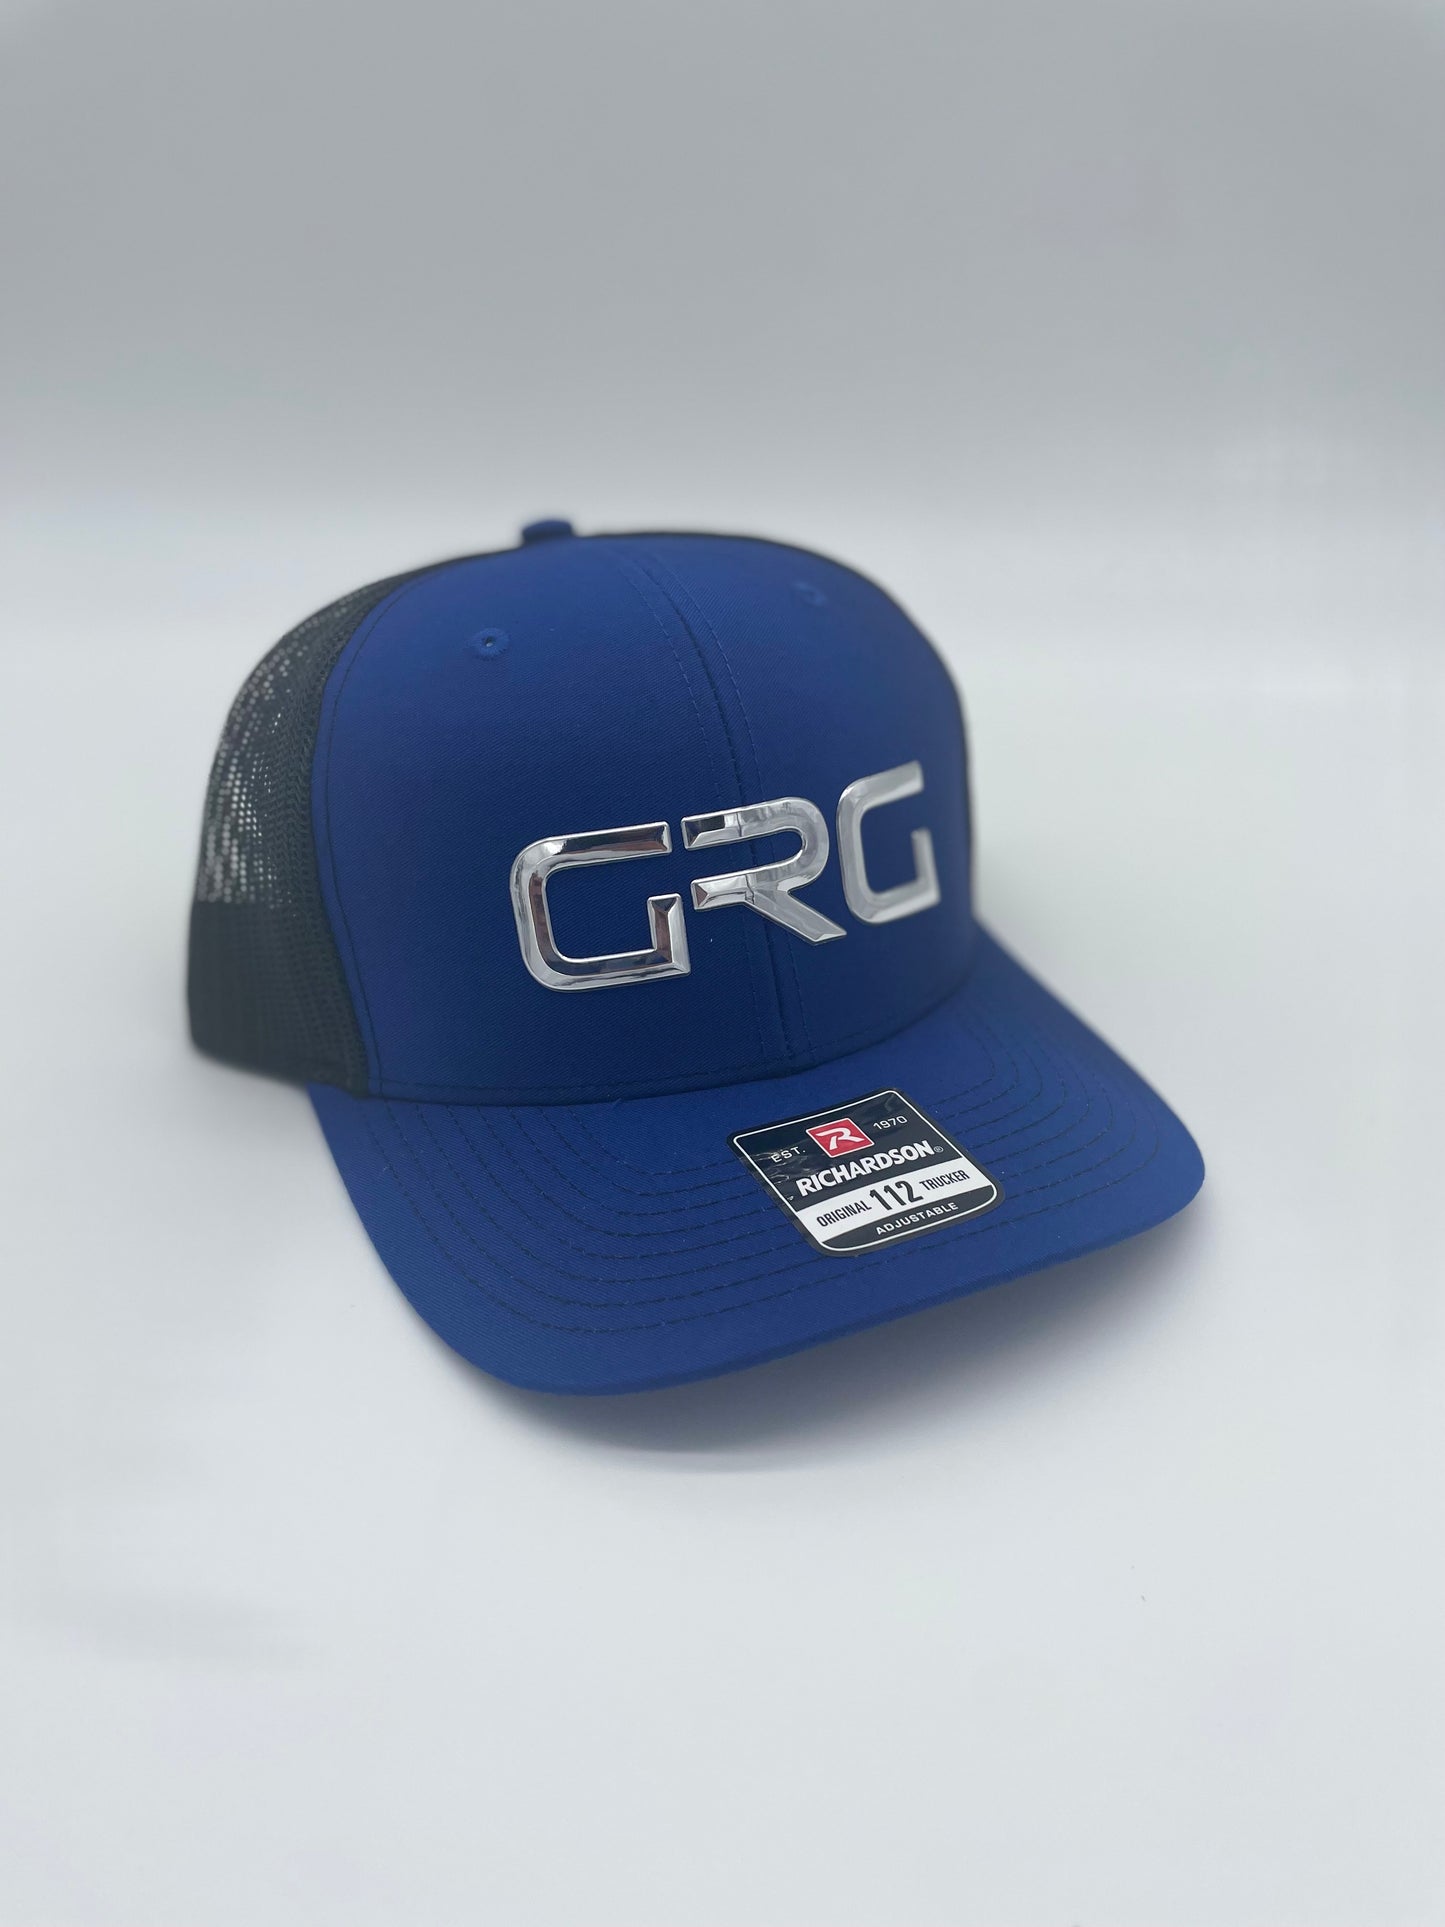 GRG Chrome Trucker Caps